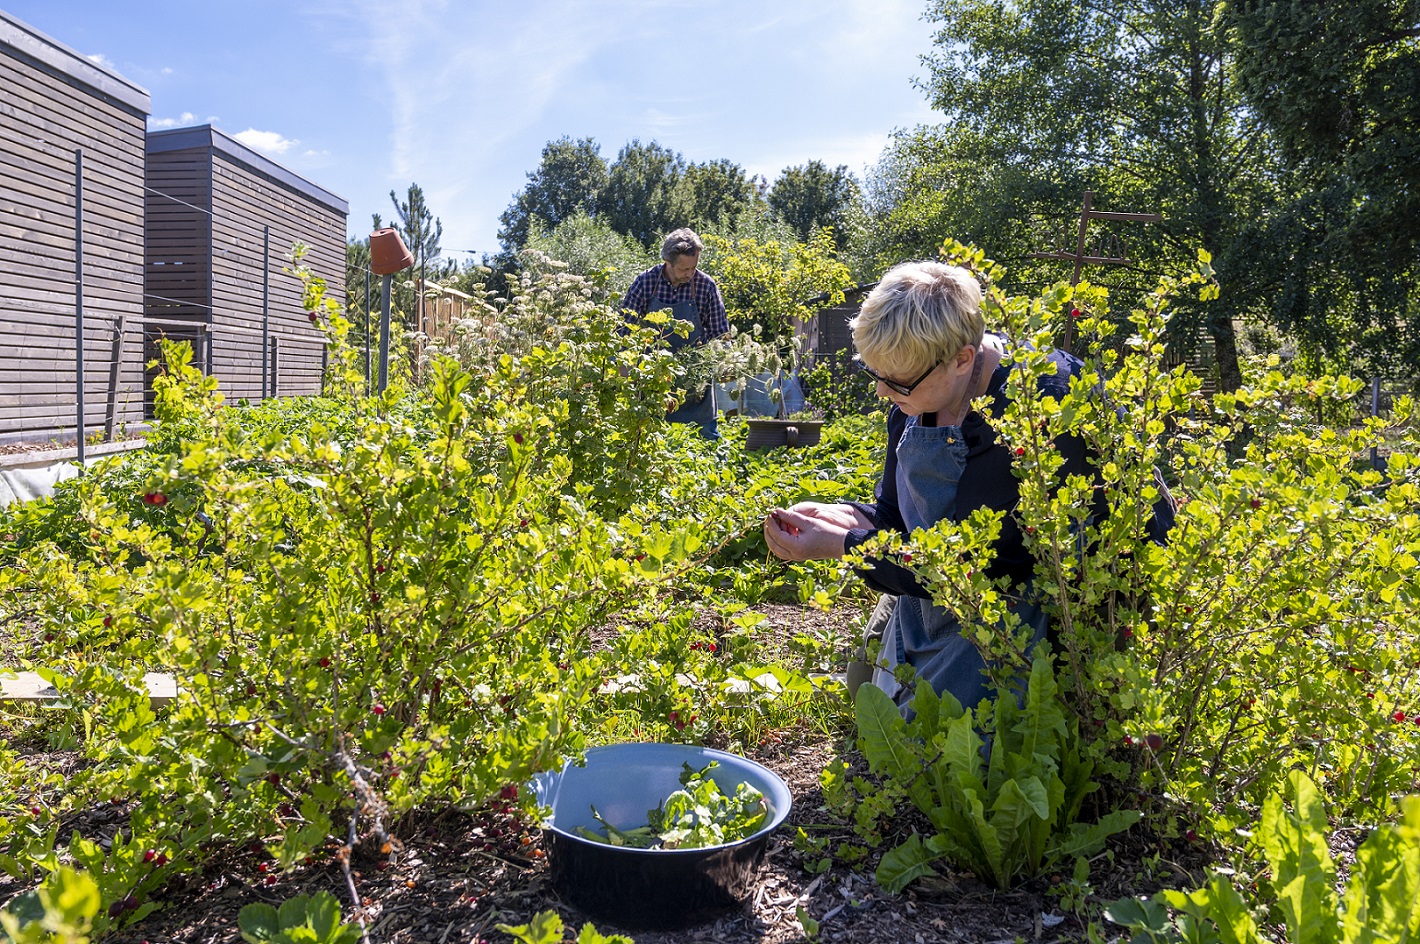 Anja Faust-Spanier et son mari font la récolte dans le jardin de la Landhaus Spanier. On la voit au premier plan avec un bol de laitue récoltée.